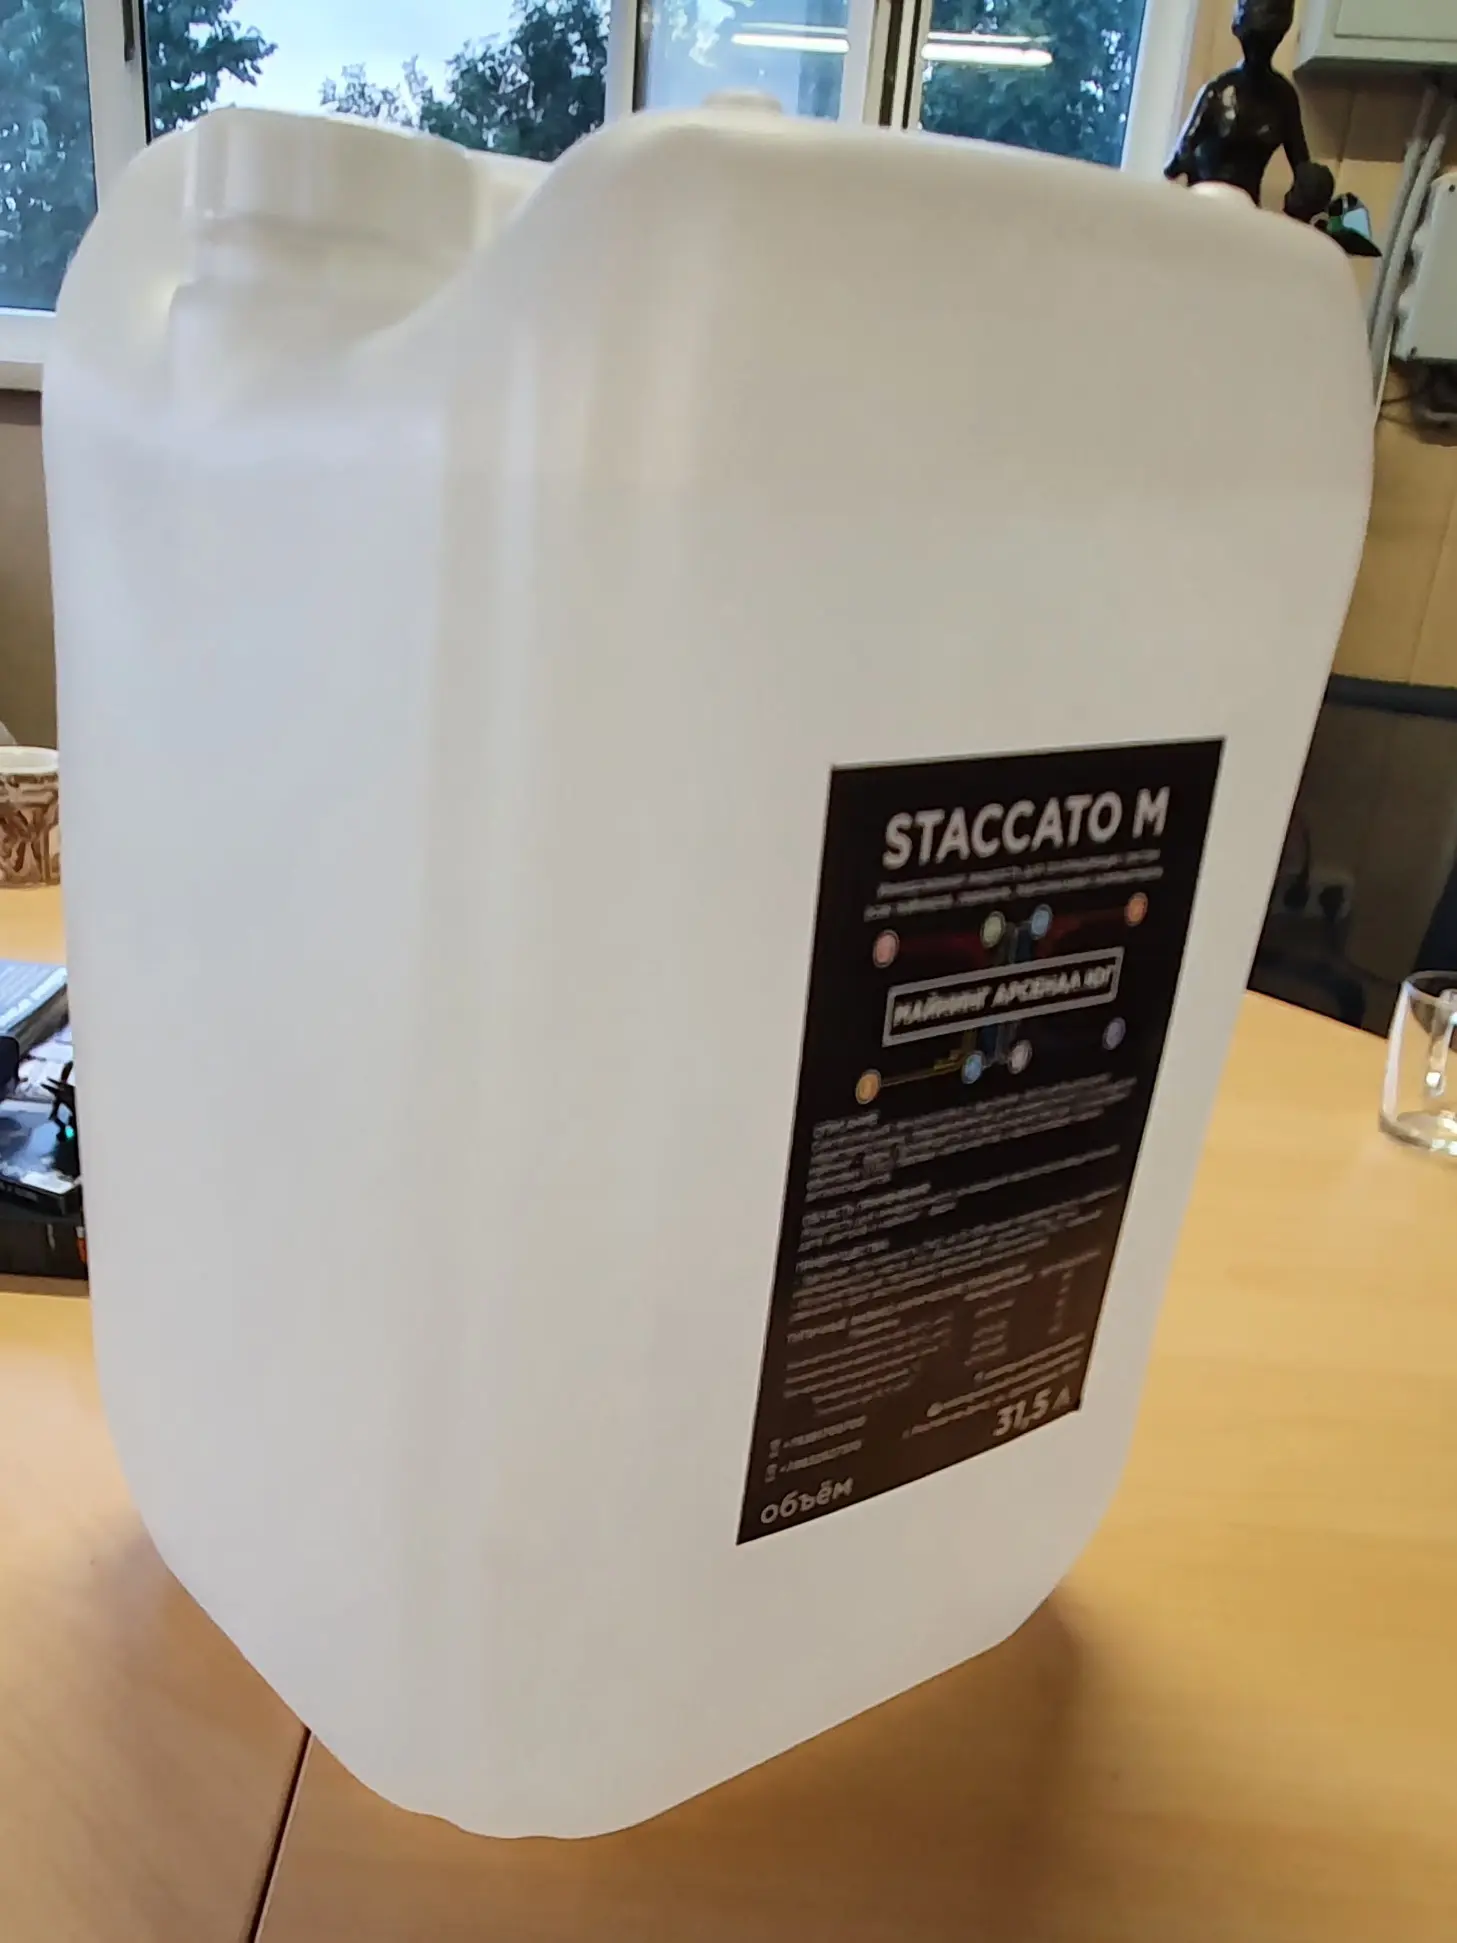 Иммерсионная охлаждающая жидкость Staccato-M